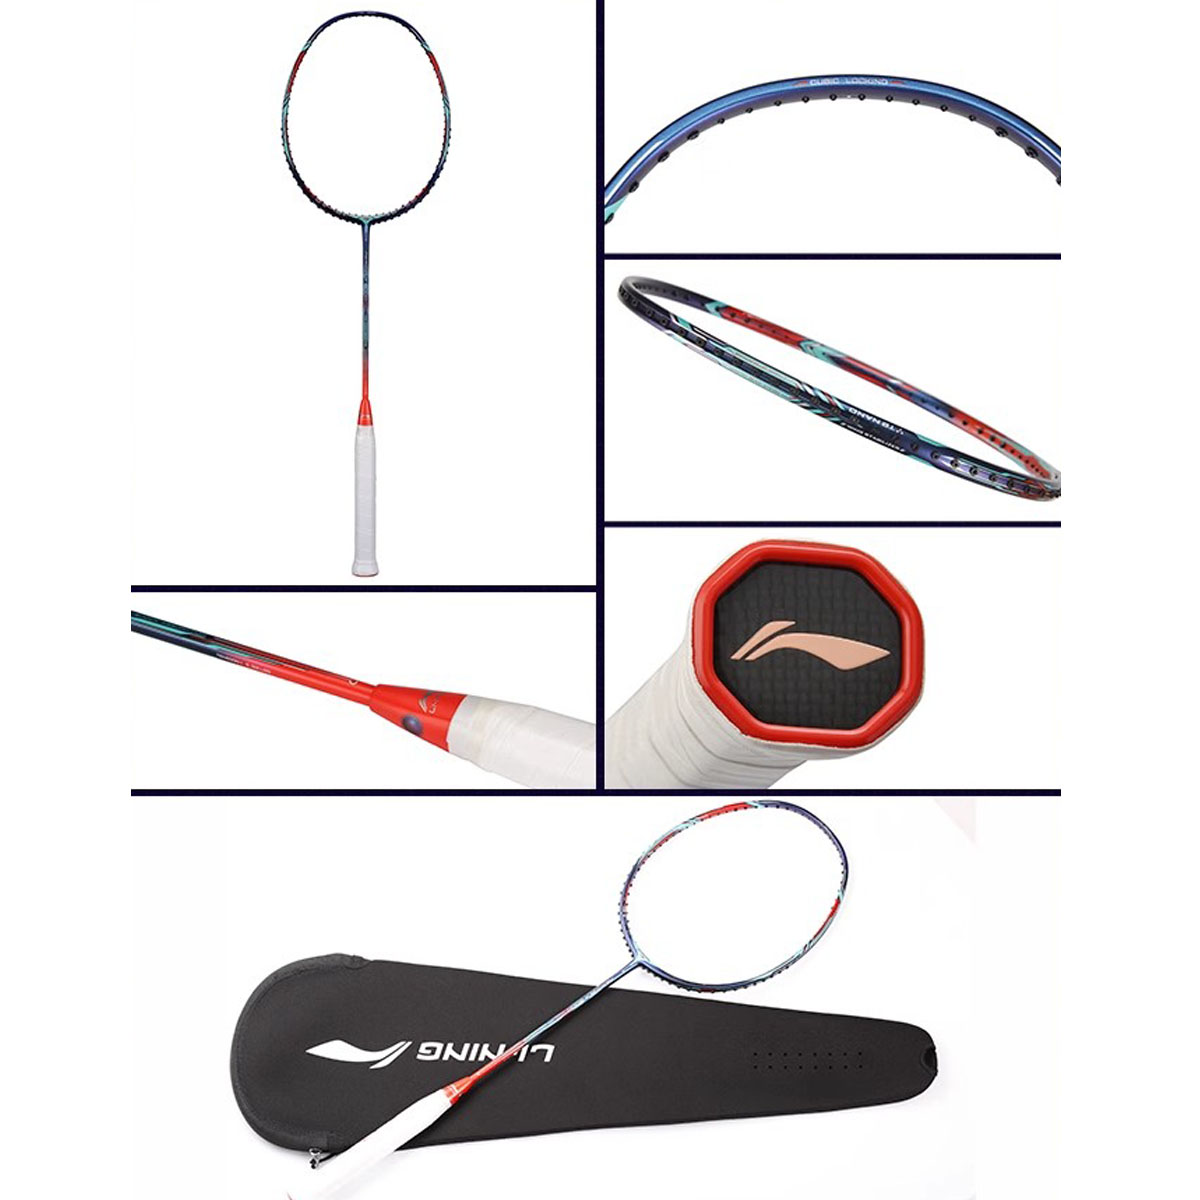 Racchetta da badminton - Racchetta da allenamento -fengdong9000-9000c-9000d- 9000i - 9000Commemorazione olimpica - Fibra di carbonio ultraleggera interamente in carbonio